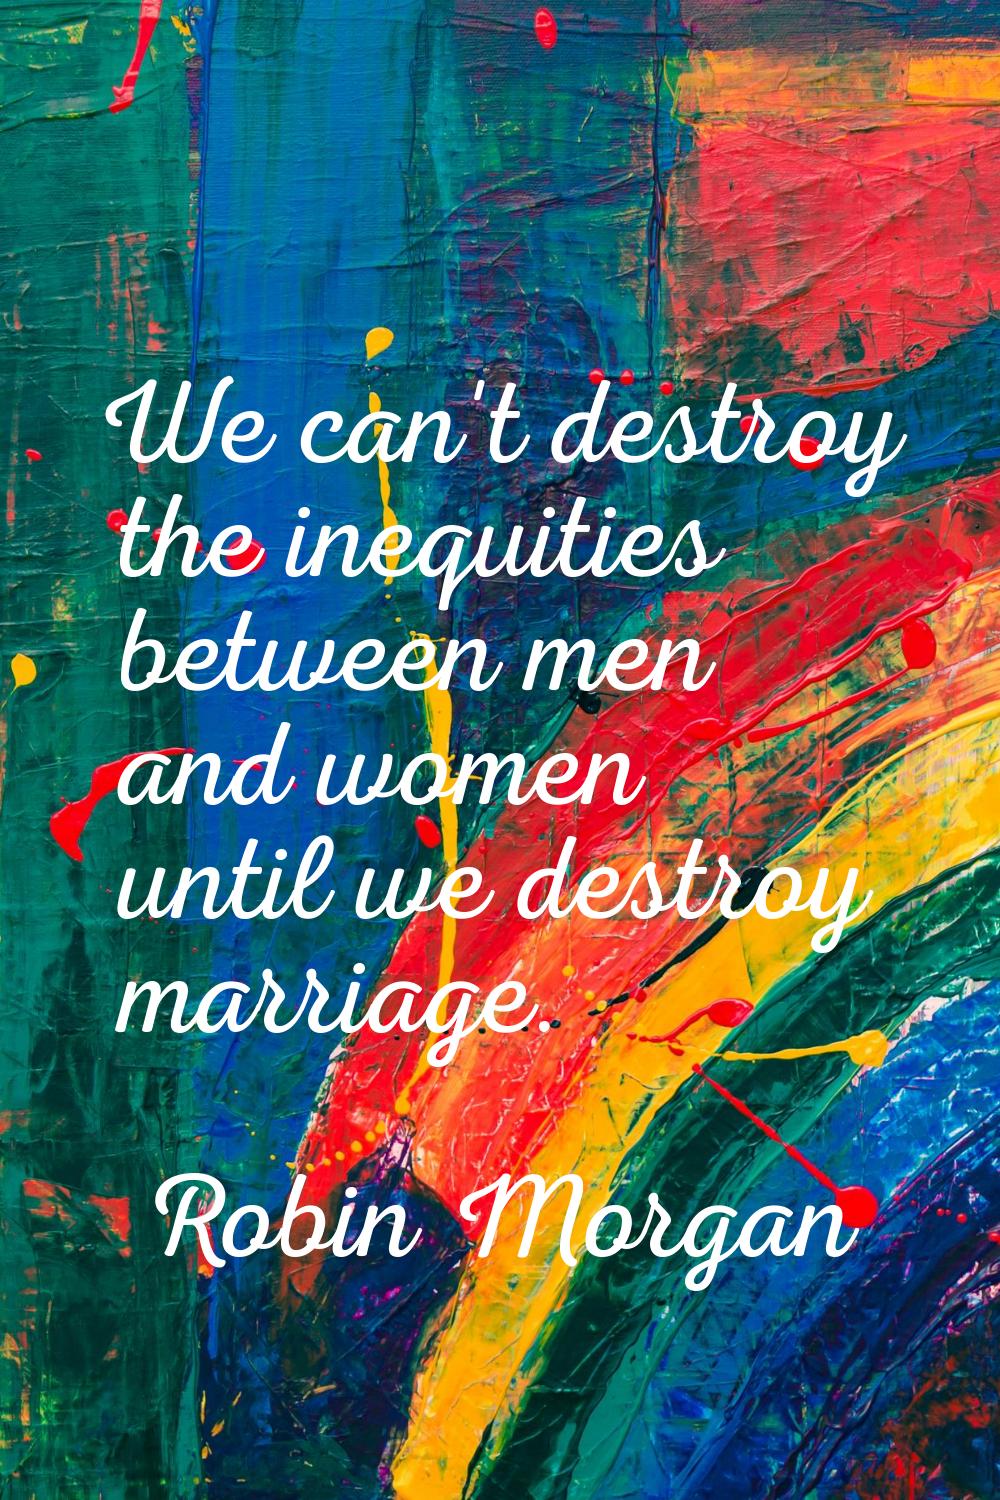 We can't destroy the inequities between men and women until we destroy marriage.